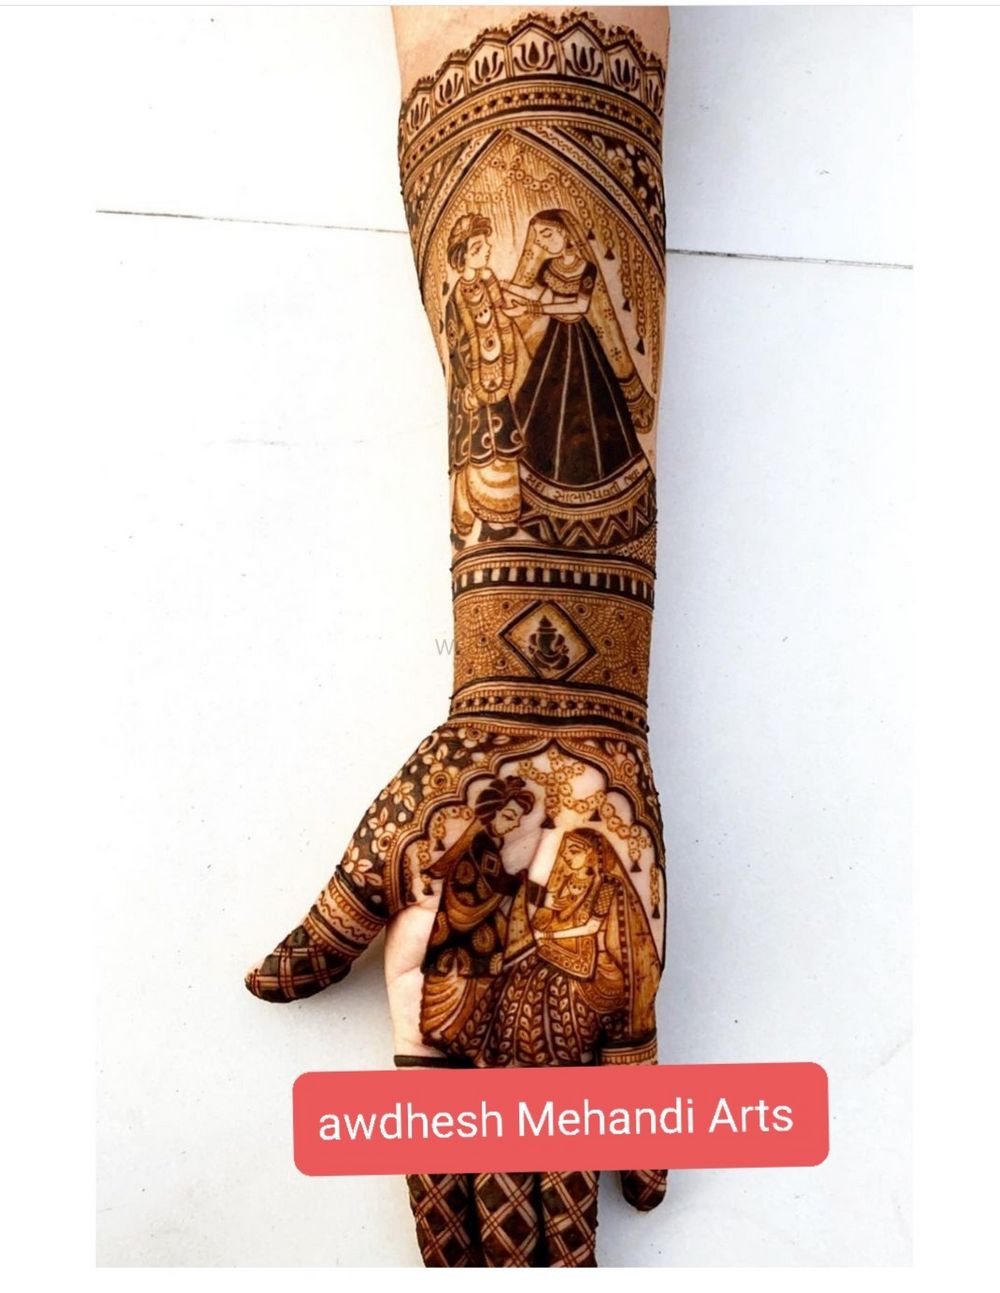 Photo From awdhesh Mehandi Arts - By Awdhesh Mehandi Arts